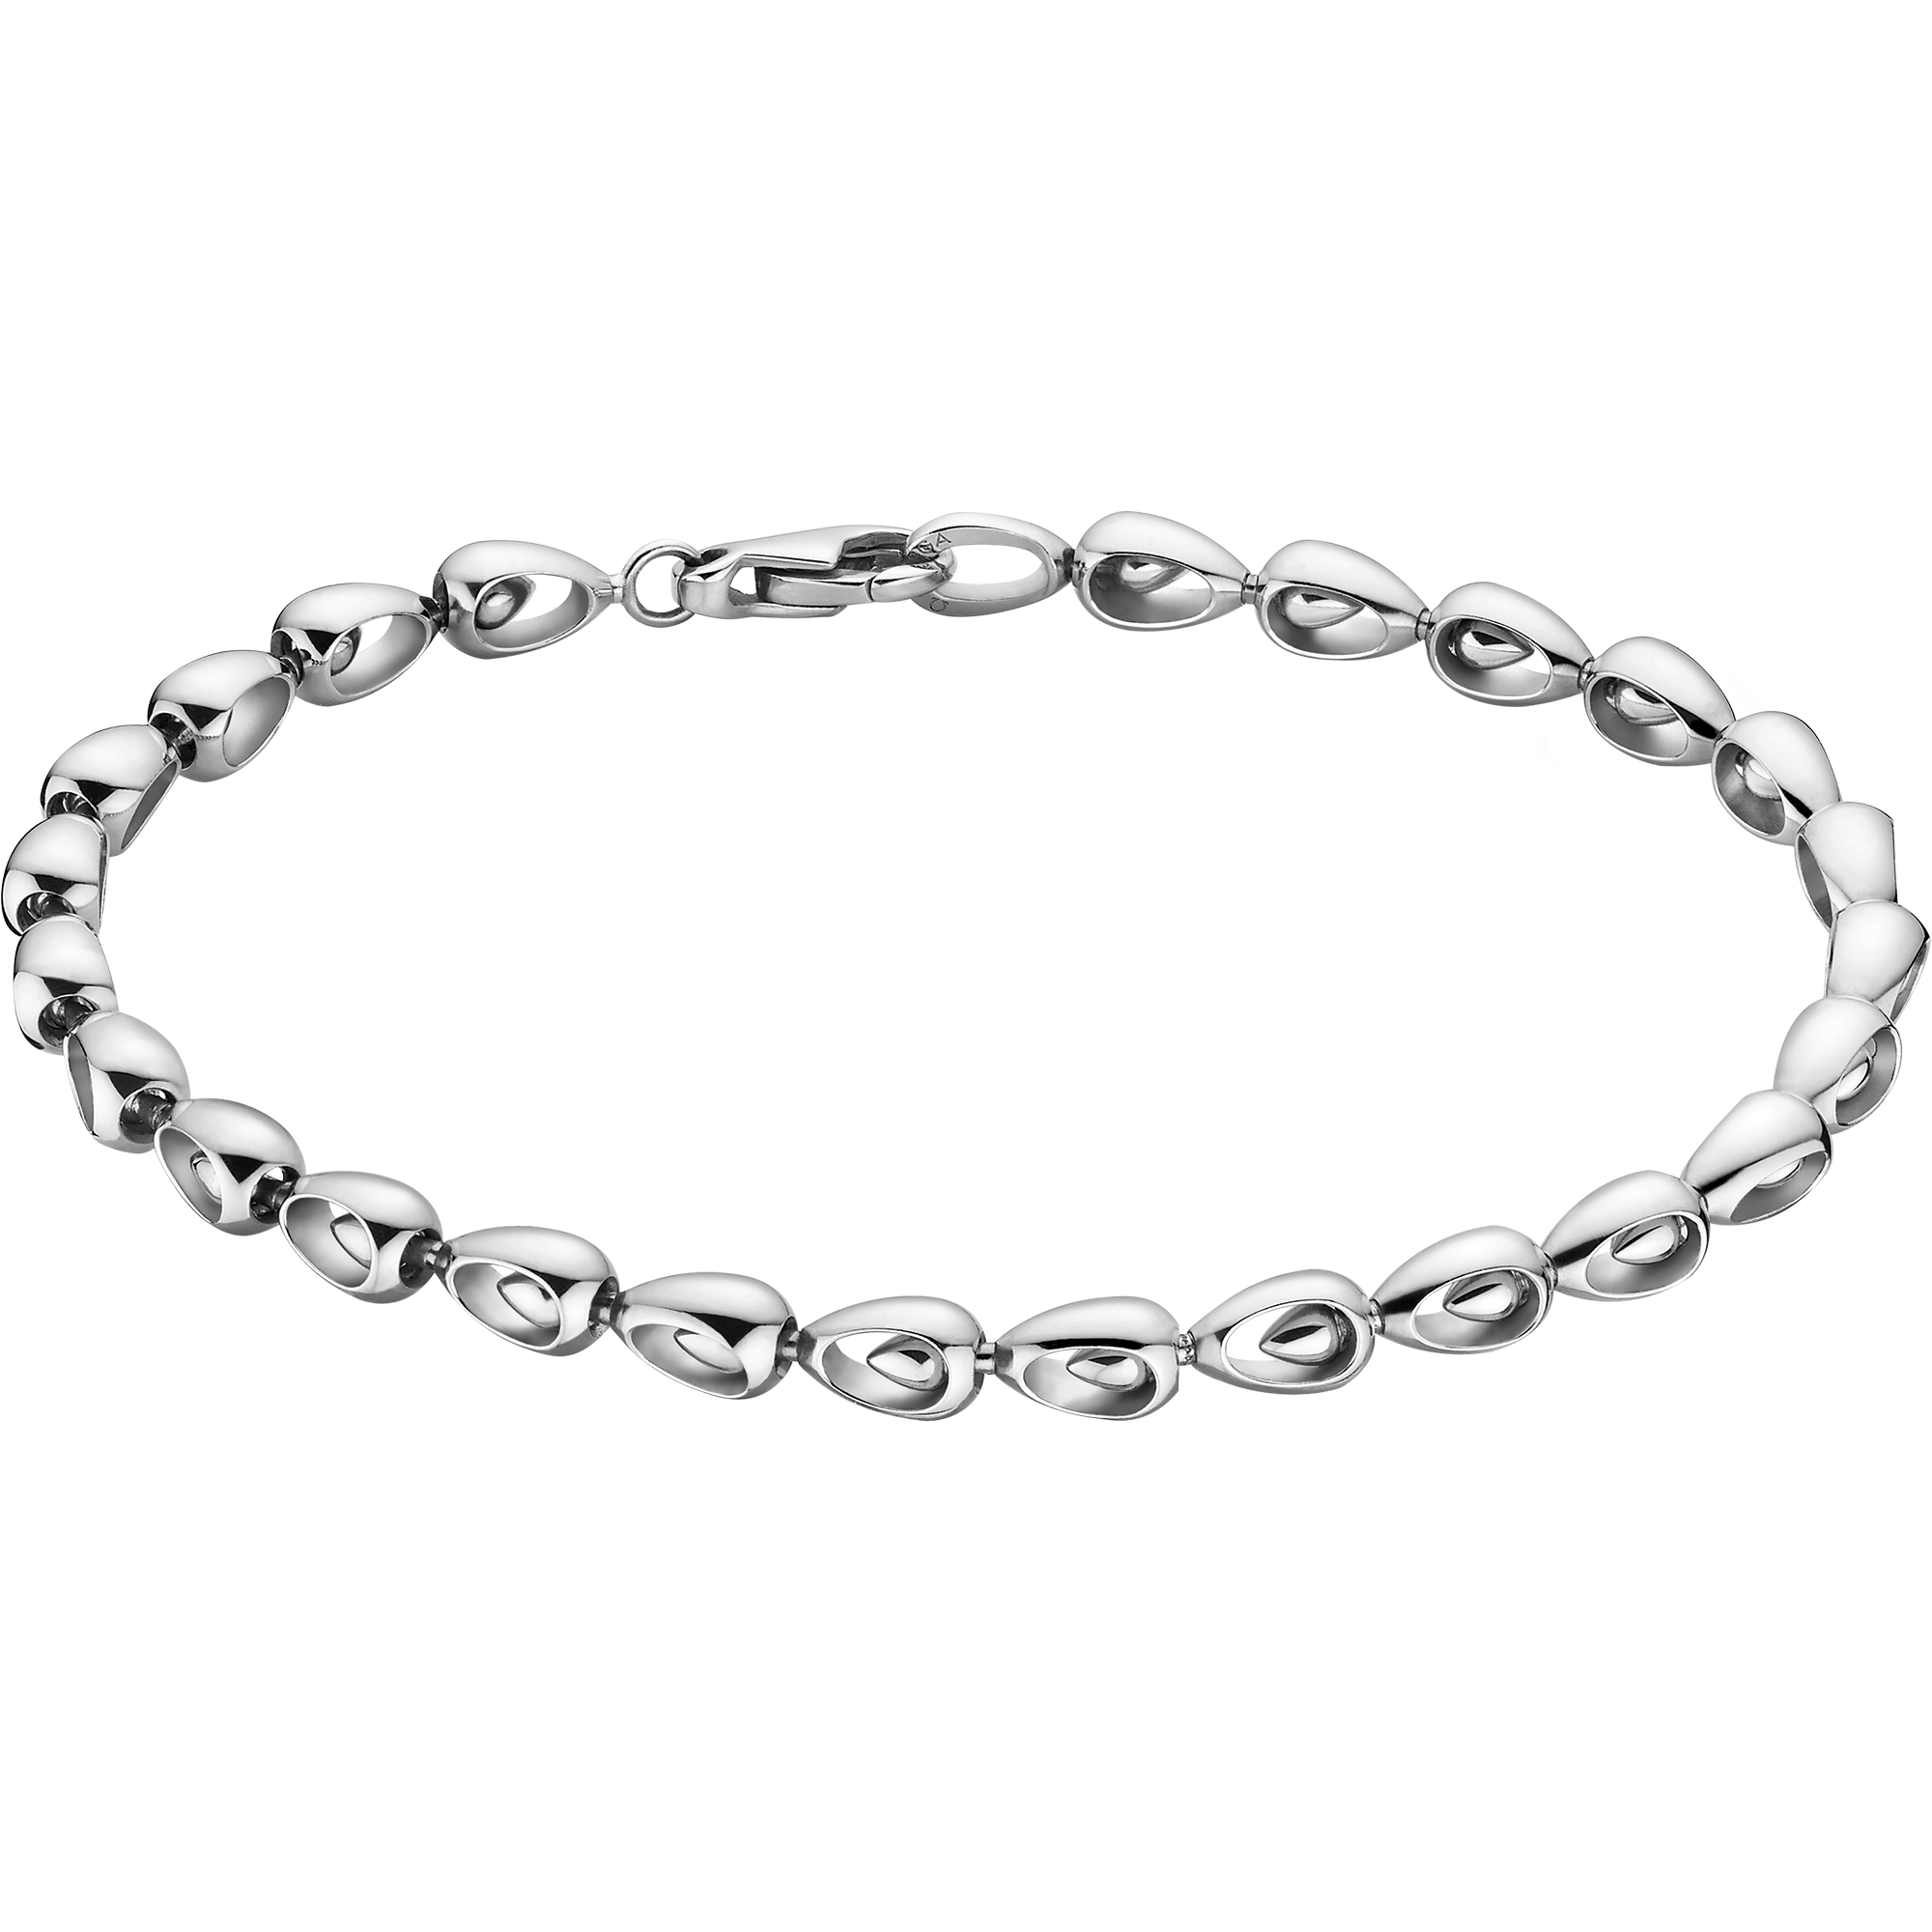 Omega Dewdrop Bracelet, Or blanc 18K - B602BC0000205